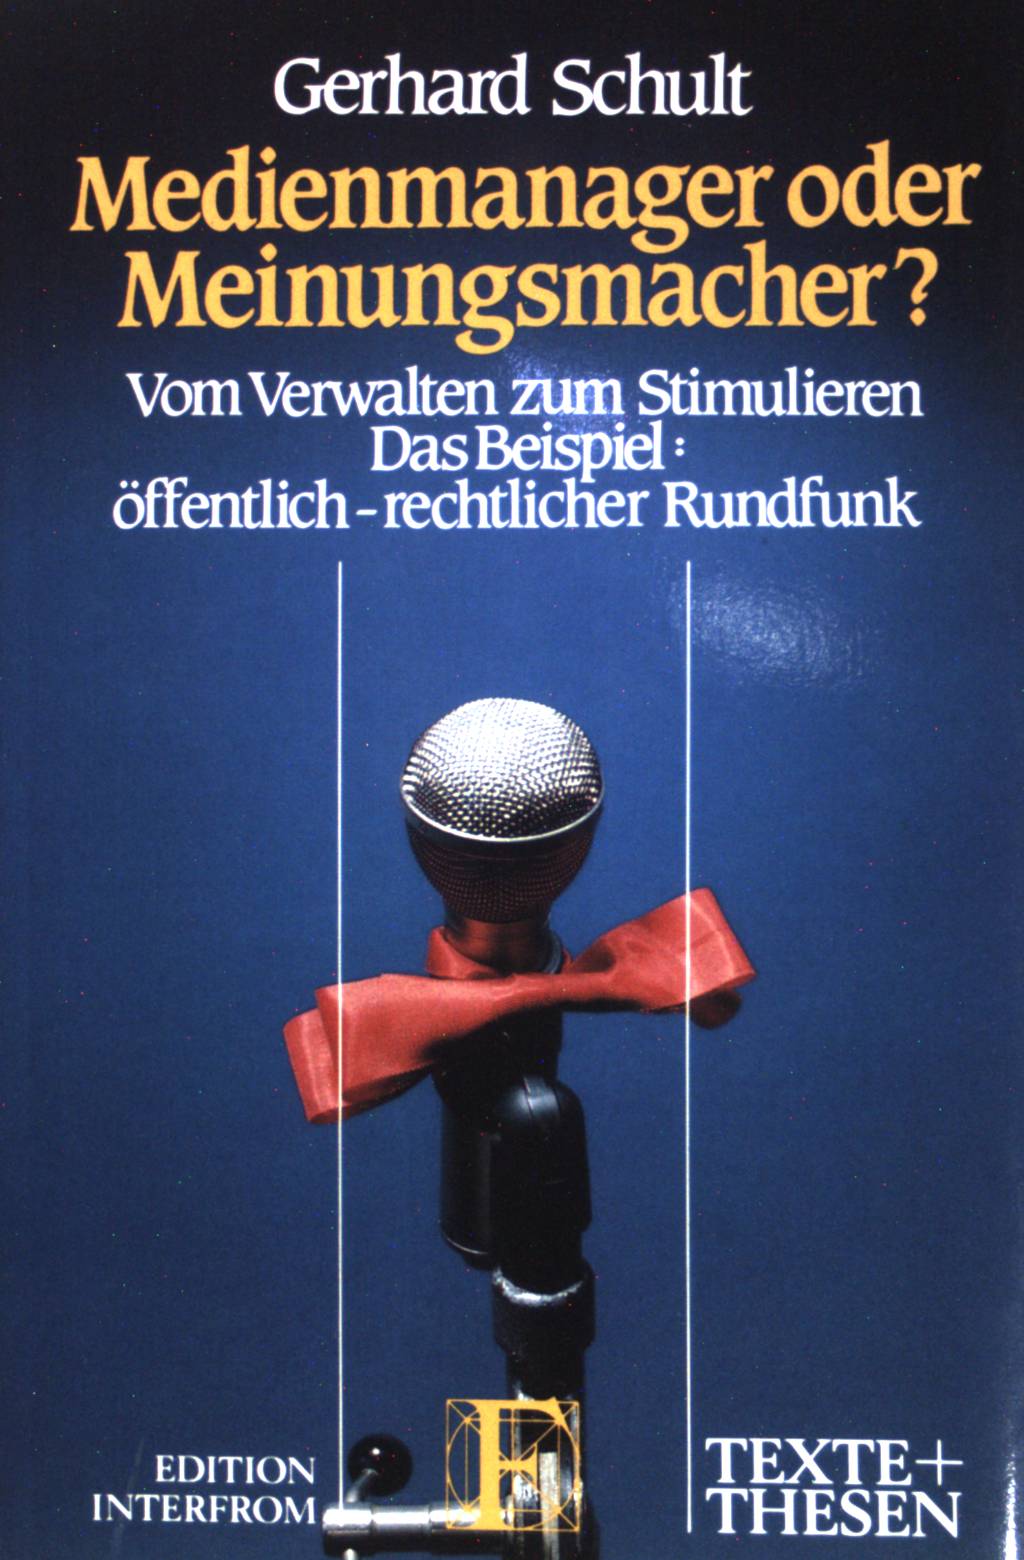 Medienmanager oder Meinungsmacher?: Vom Verwalten zum Stimulieren : das Beispiel, offentlich-rechtlicher Rundfunk. (Nr. 209) Texte + Thesen - Schult, Gerhard